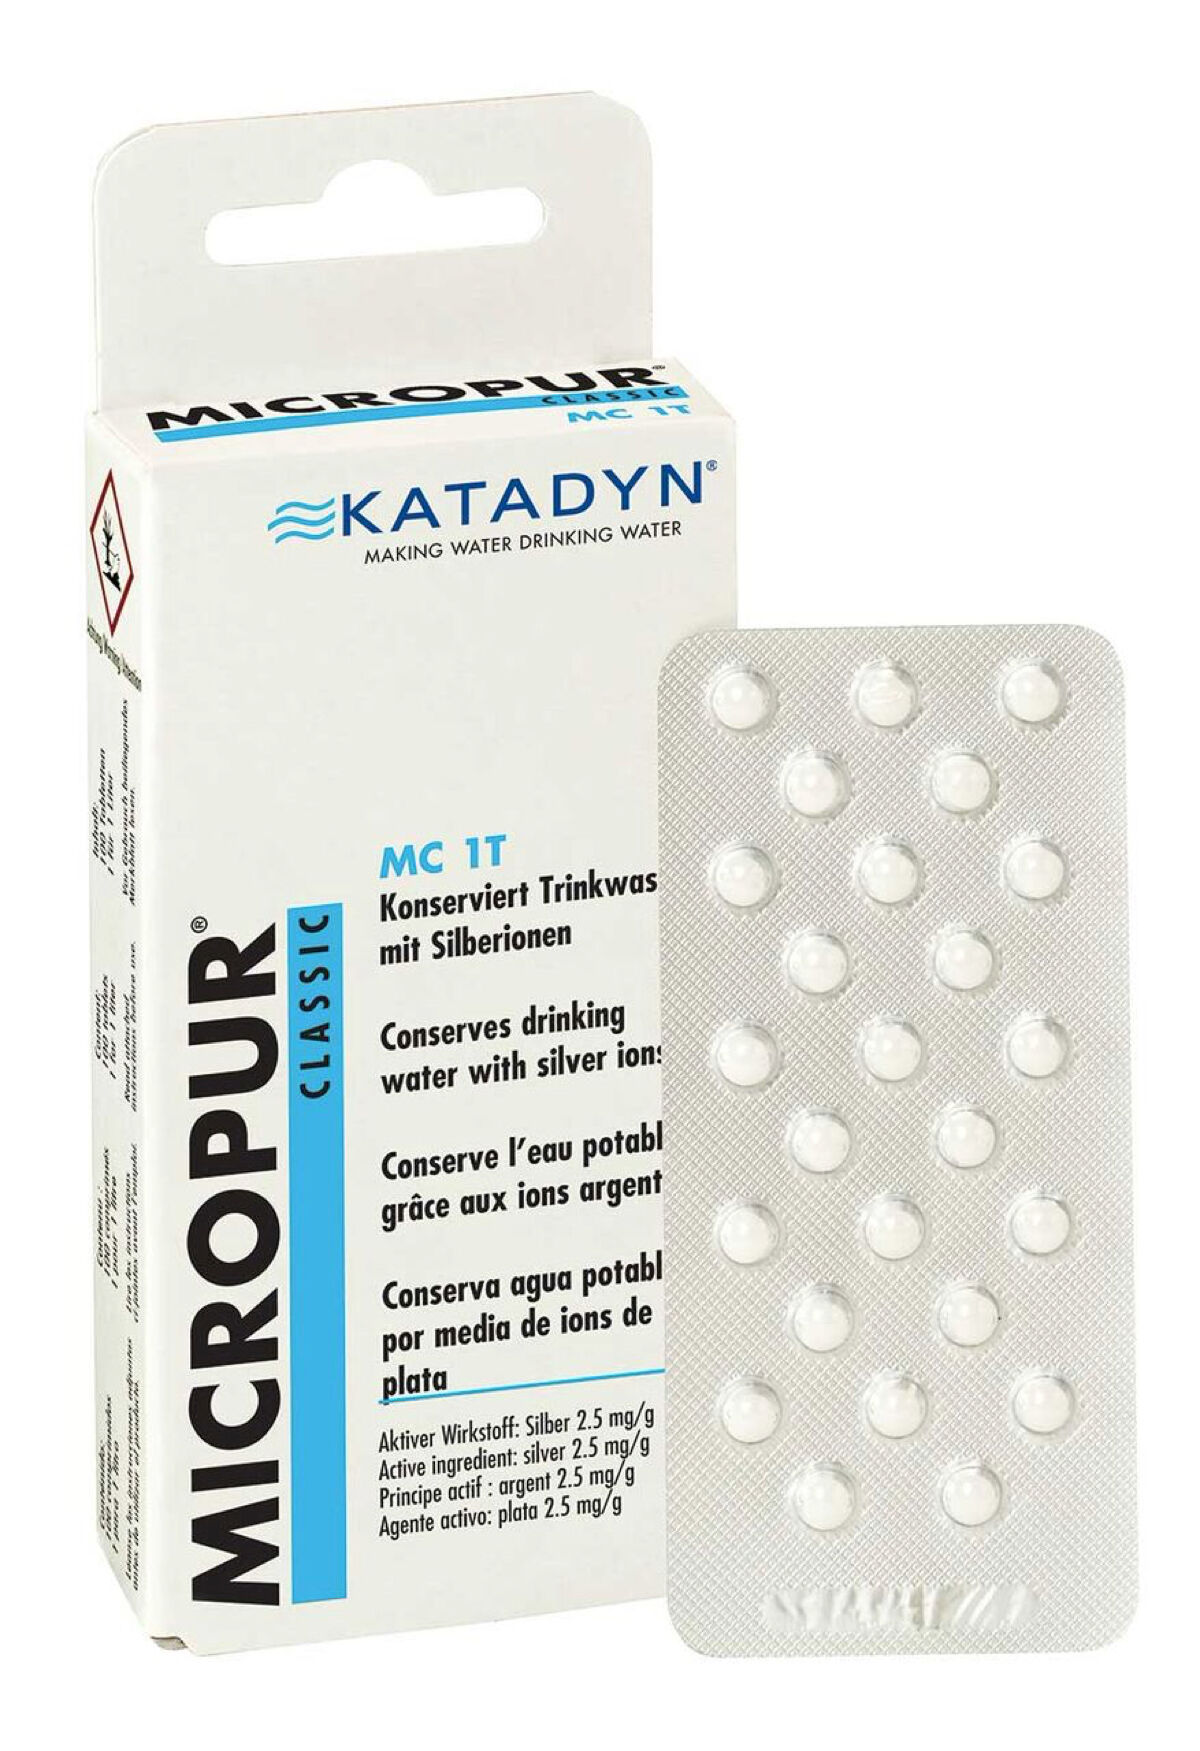 Katadyn - Micropur Classic MC 1T - Wasserdesinfektion